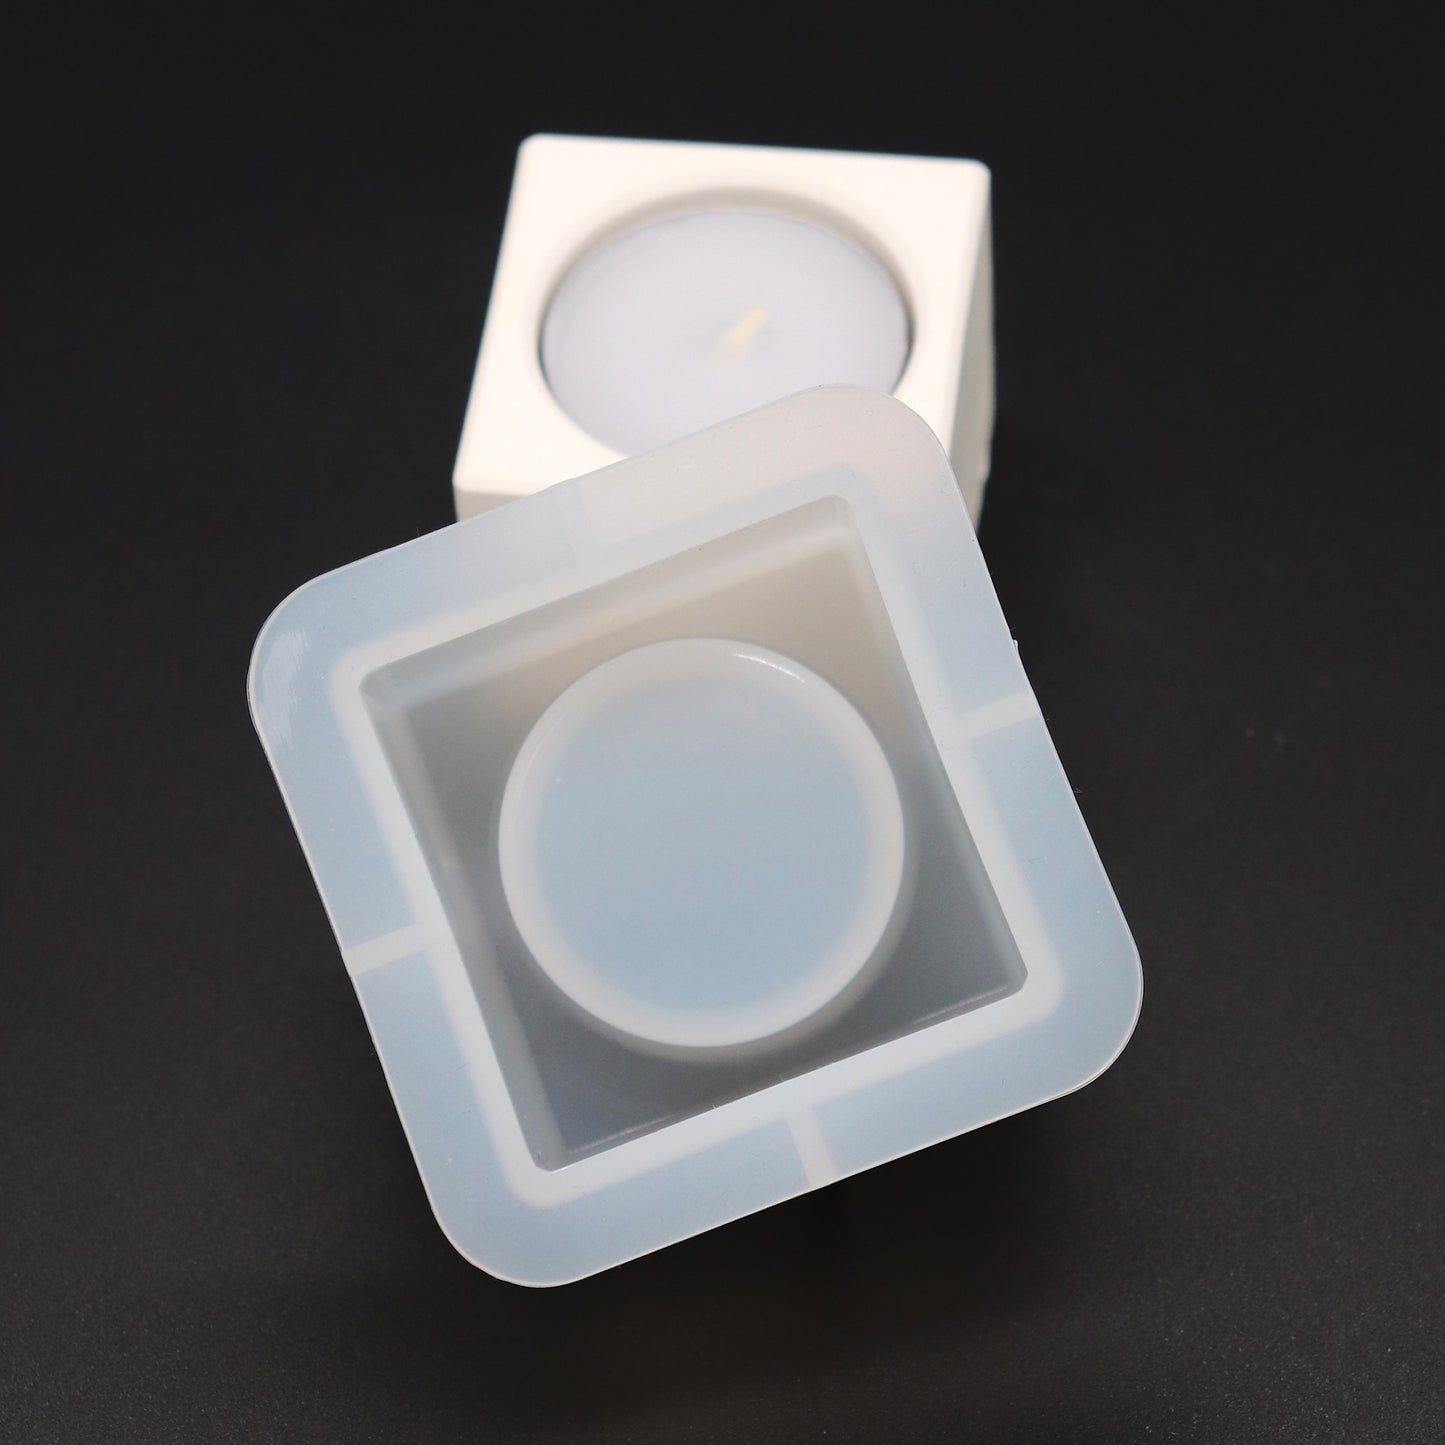 Silikonform Teelichthalter Eckig Gießform für Epoxidharz oder Raysin ca. 4 cm hoch